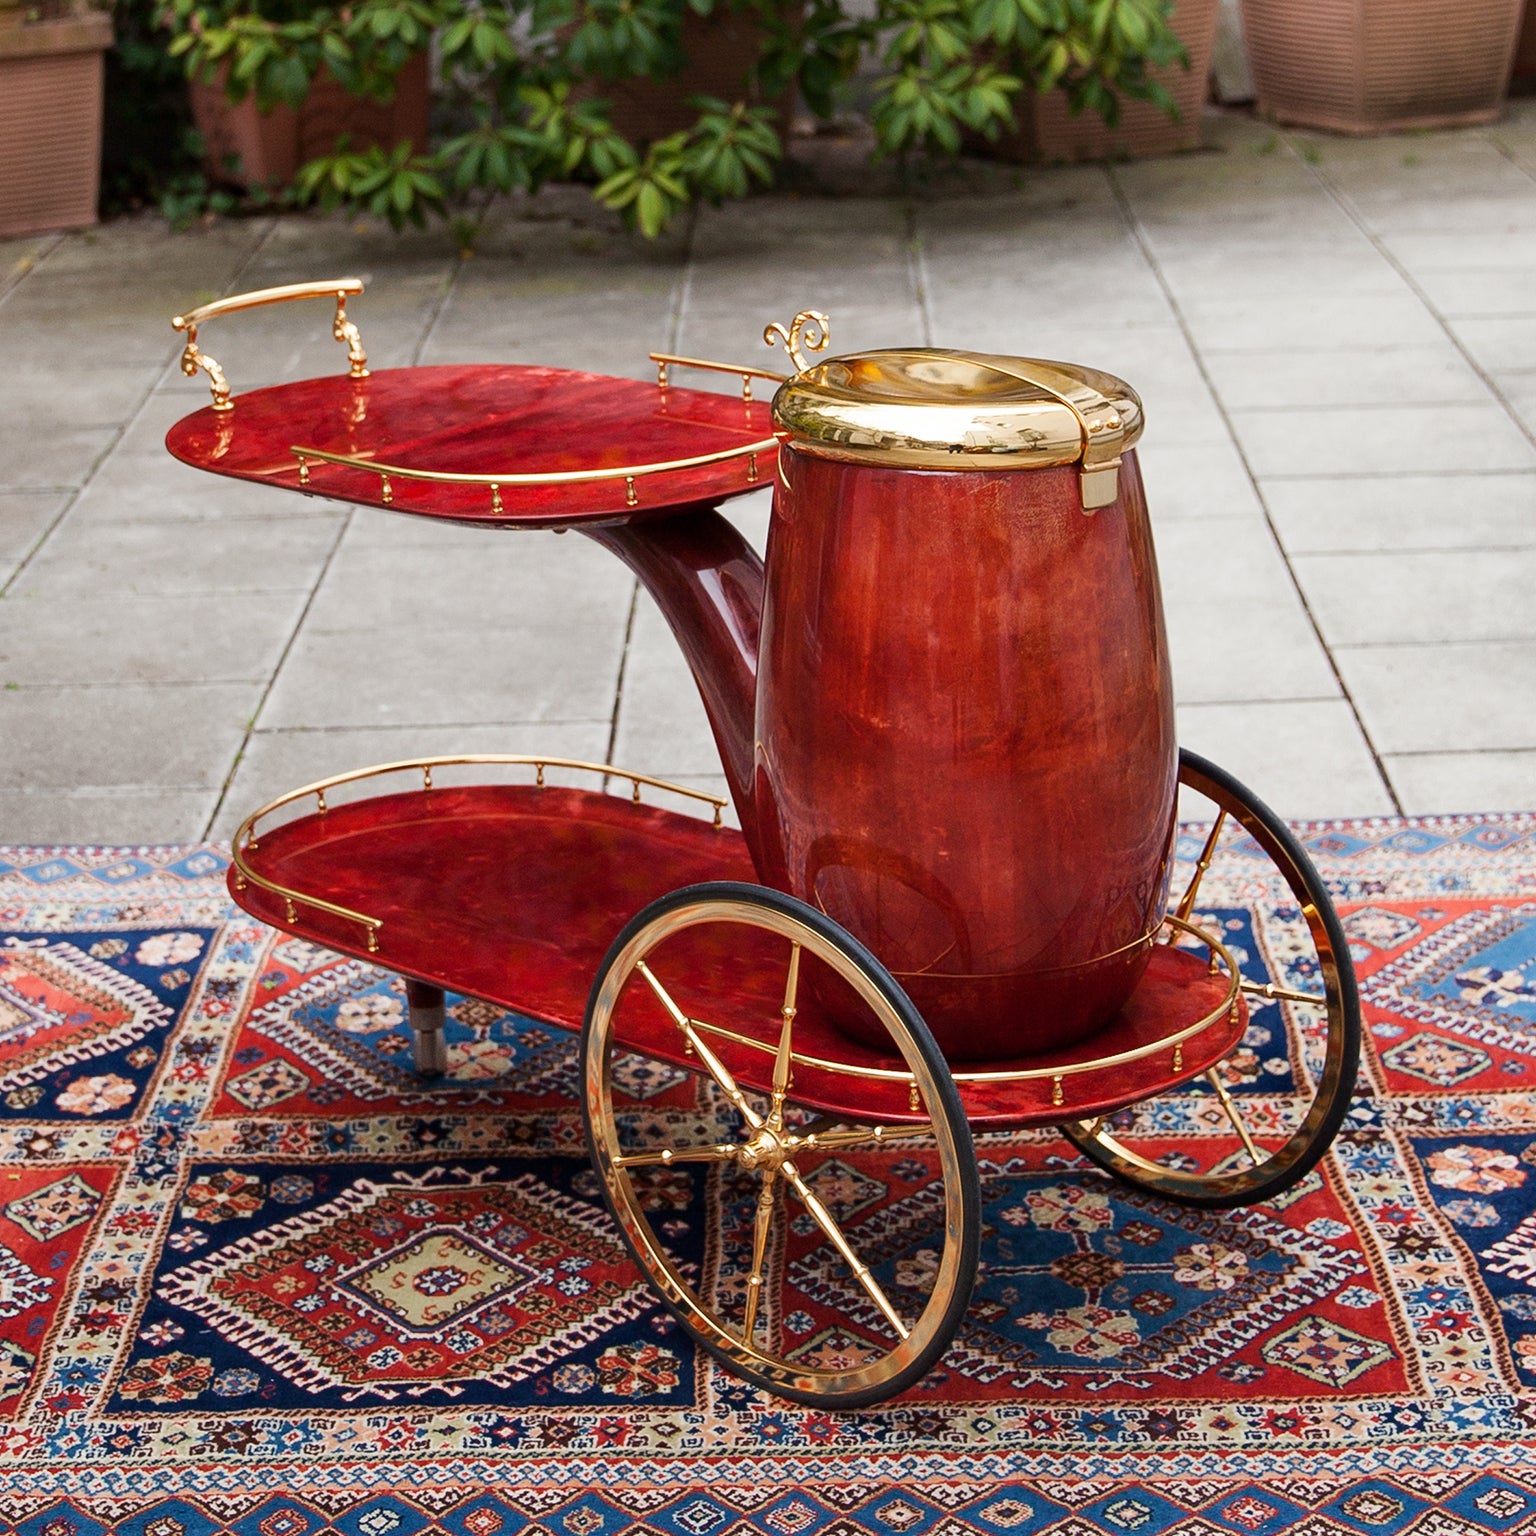 Chariot de bar Aldo Tura en forme de tuyau, laqué en peau de chèvre rouge avec des applications en laiton doré et un énorme récipient comme refroidisseur de champagne ou de vin.
Suivant l'idée de René Magritte. 
L'un des designs les plus connus